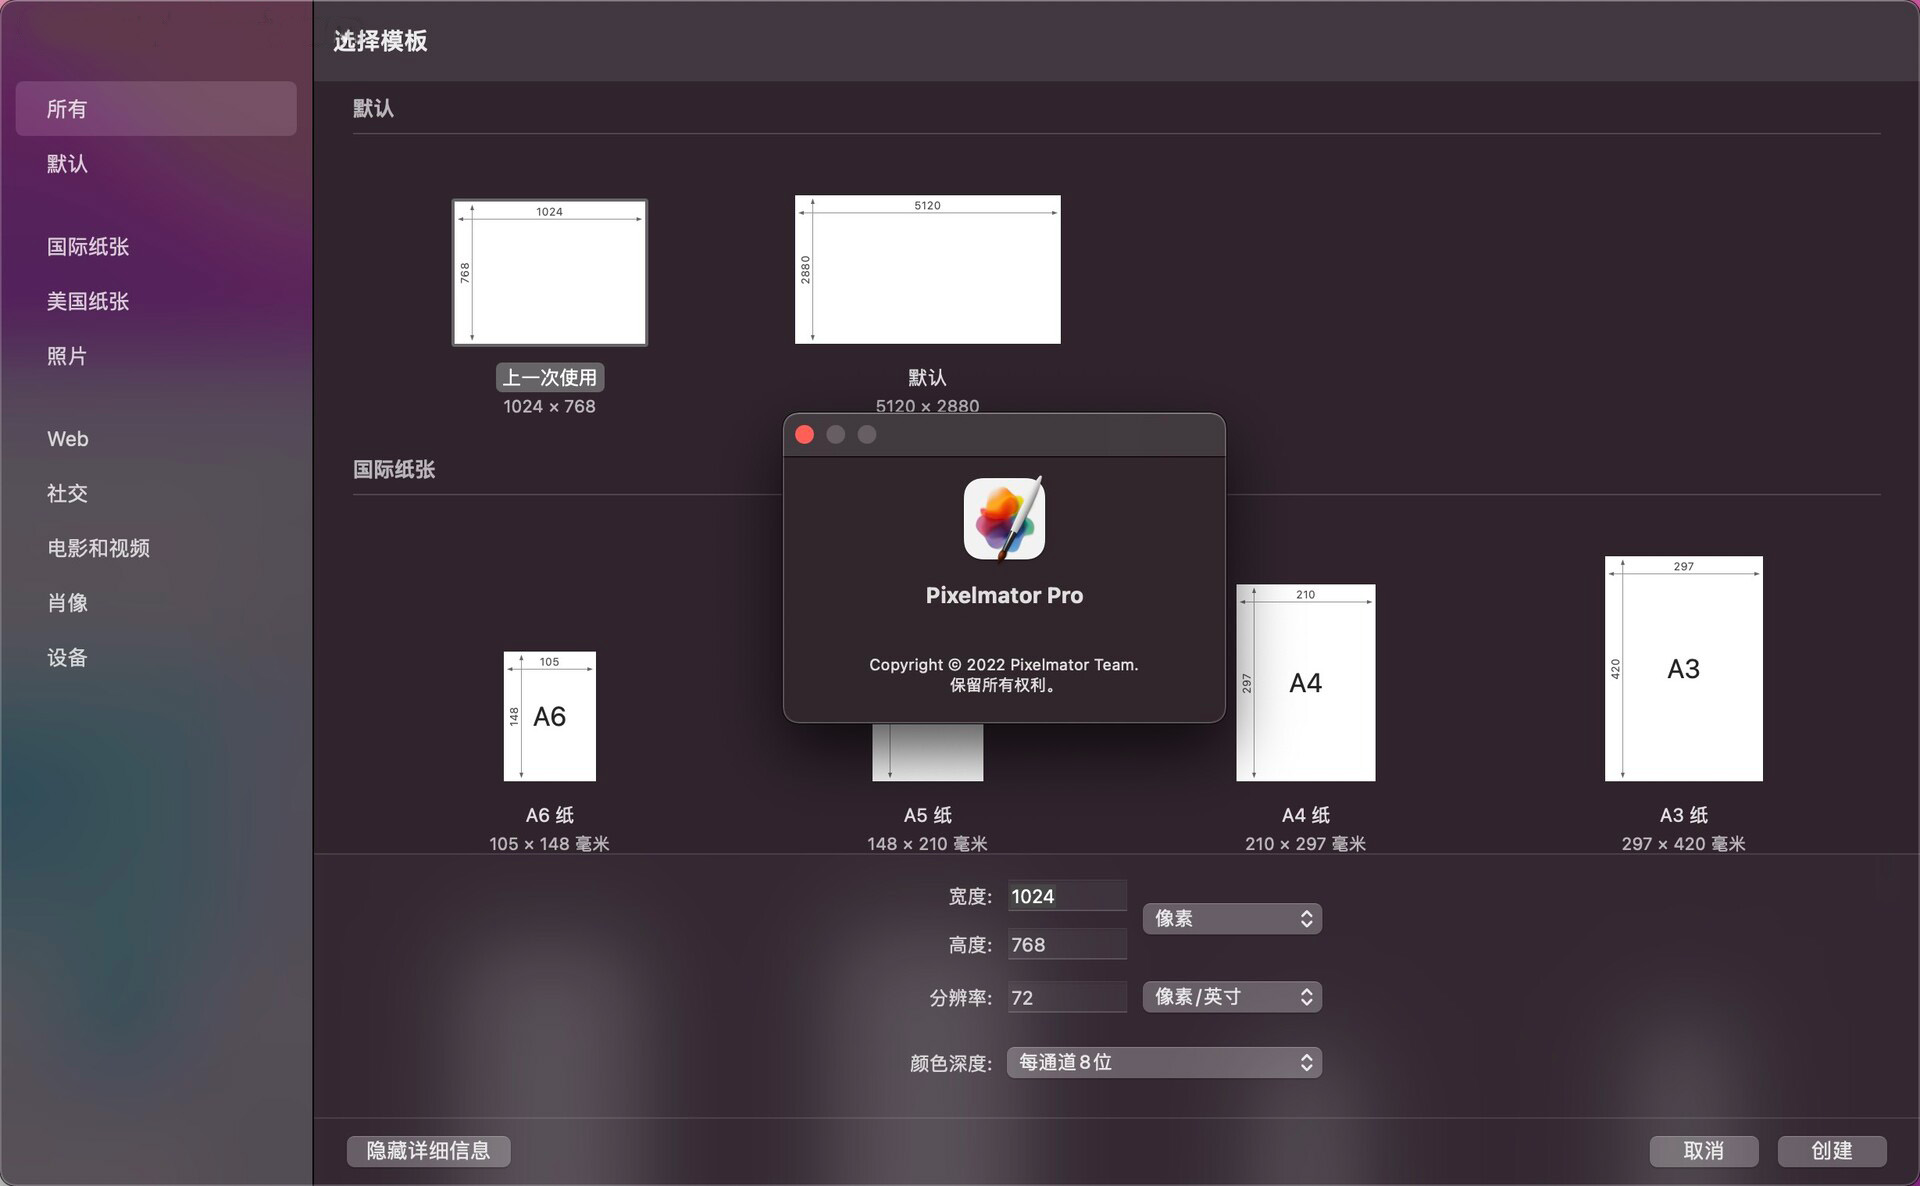 Capture One Pro 22 for Mac(RAW图像处理软件) 中文版 - 哔哩哔哩